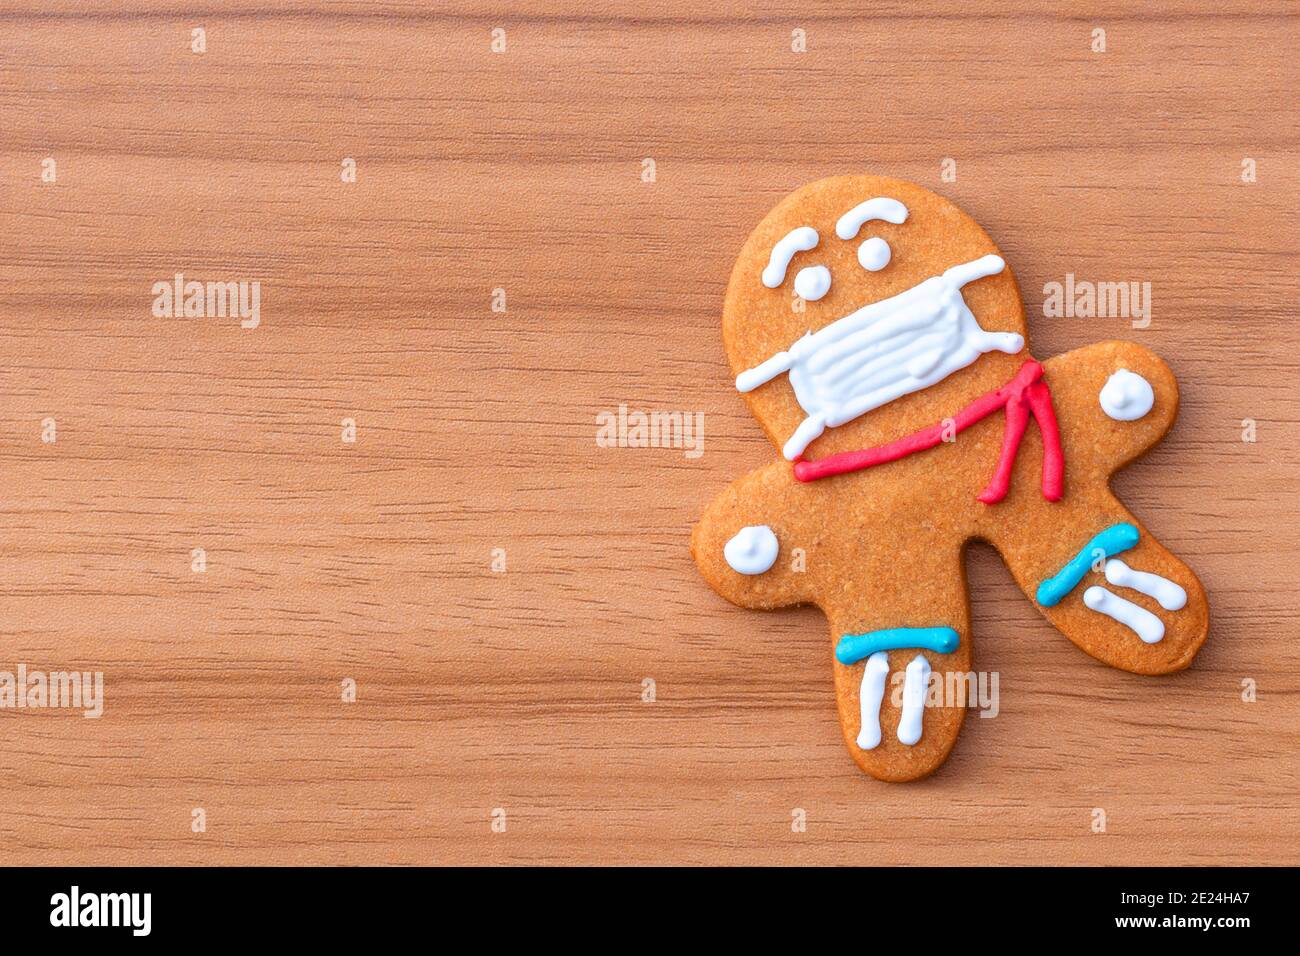 Biscotti classici di pan di zenzero uomo con una maschera medica sul tavolo. Un biscotto uomo di pan di zenzero a forma di uomo con glassa colorata. Foto Stock